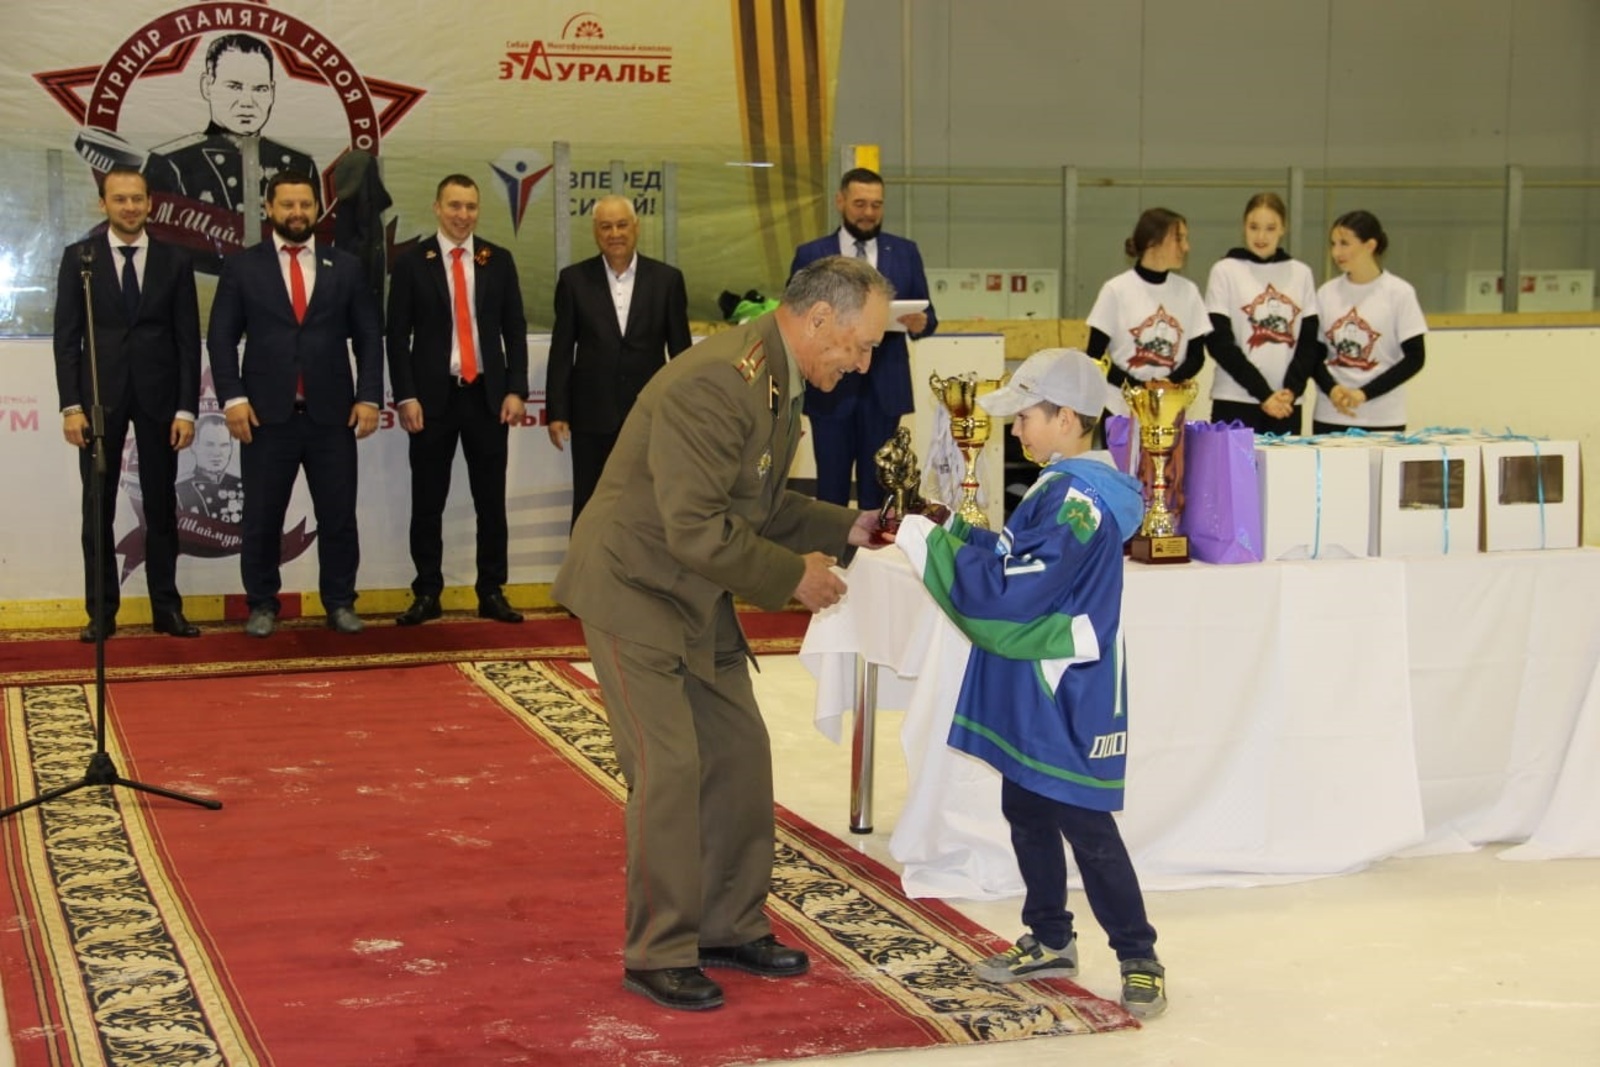 В Сибае состоялся детский хоккейный турнир памяти генерала Шаймуратова